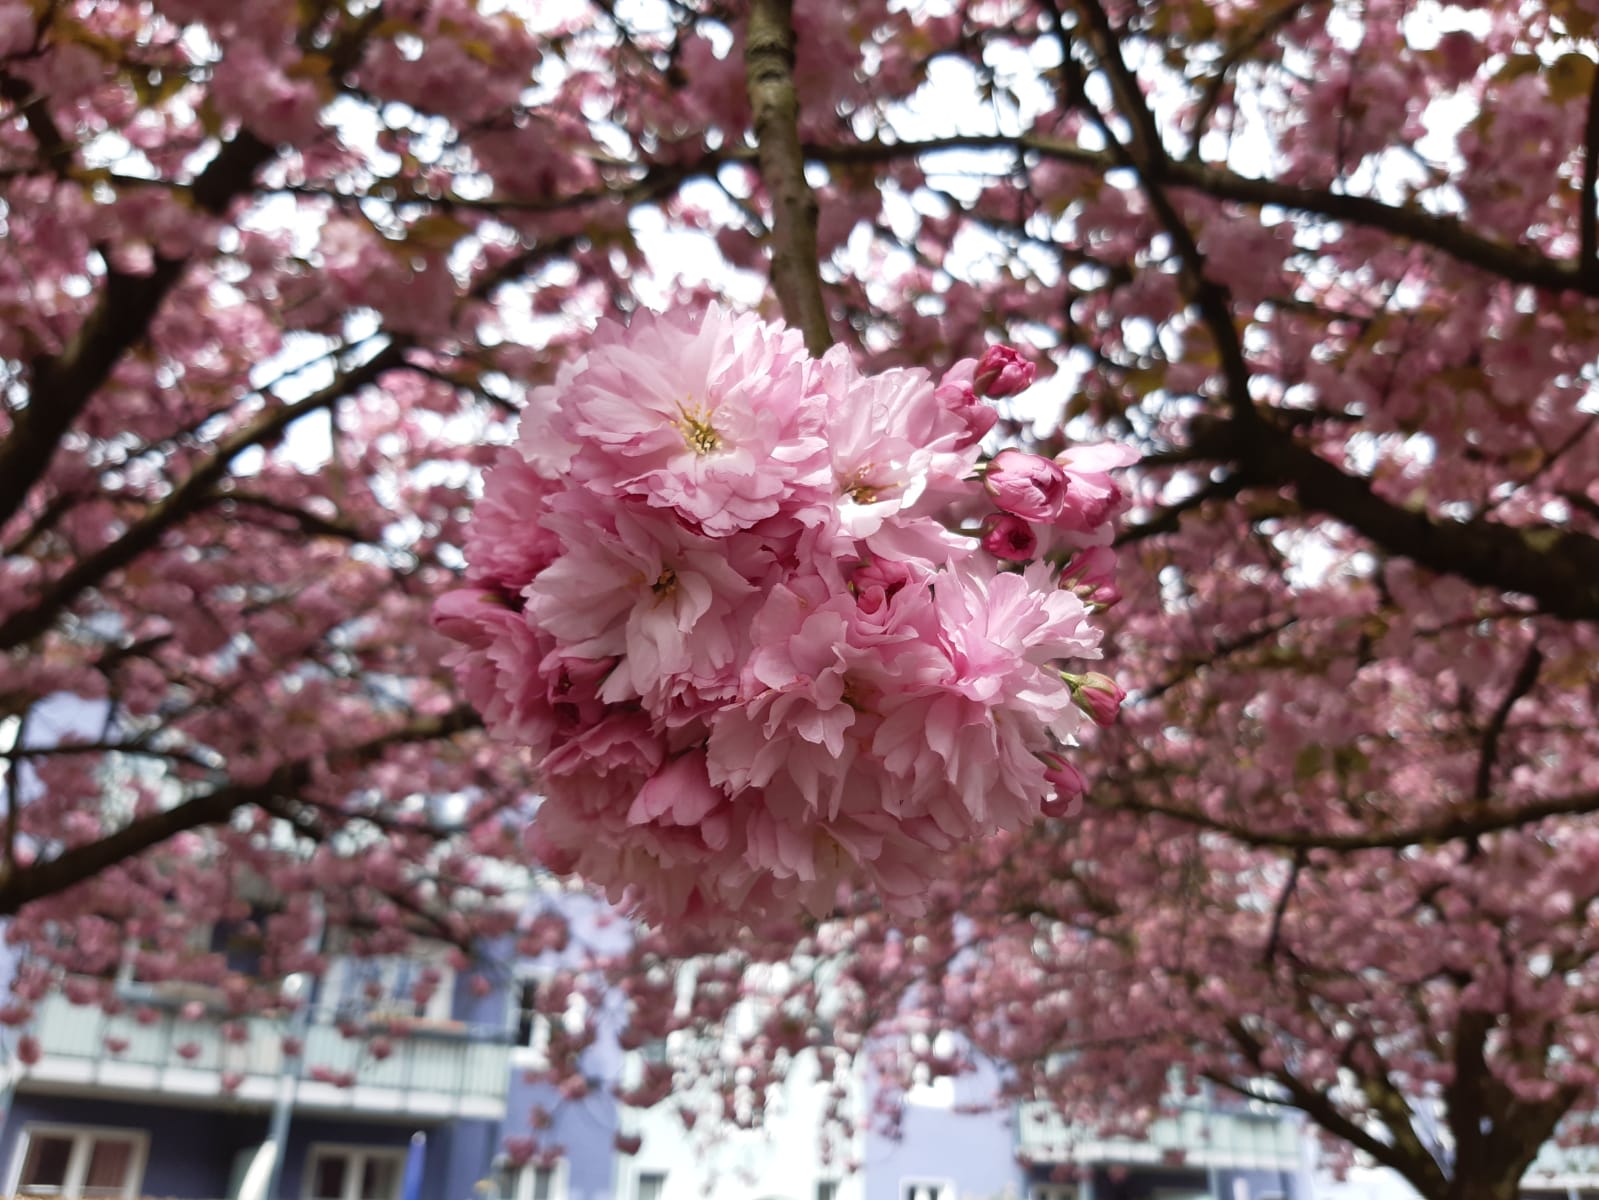 Radtour zur Kirschblüte in Bielefeld